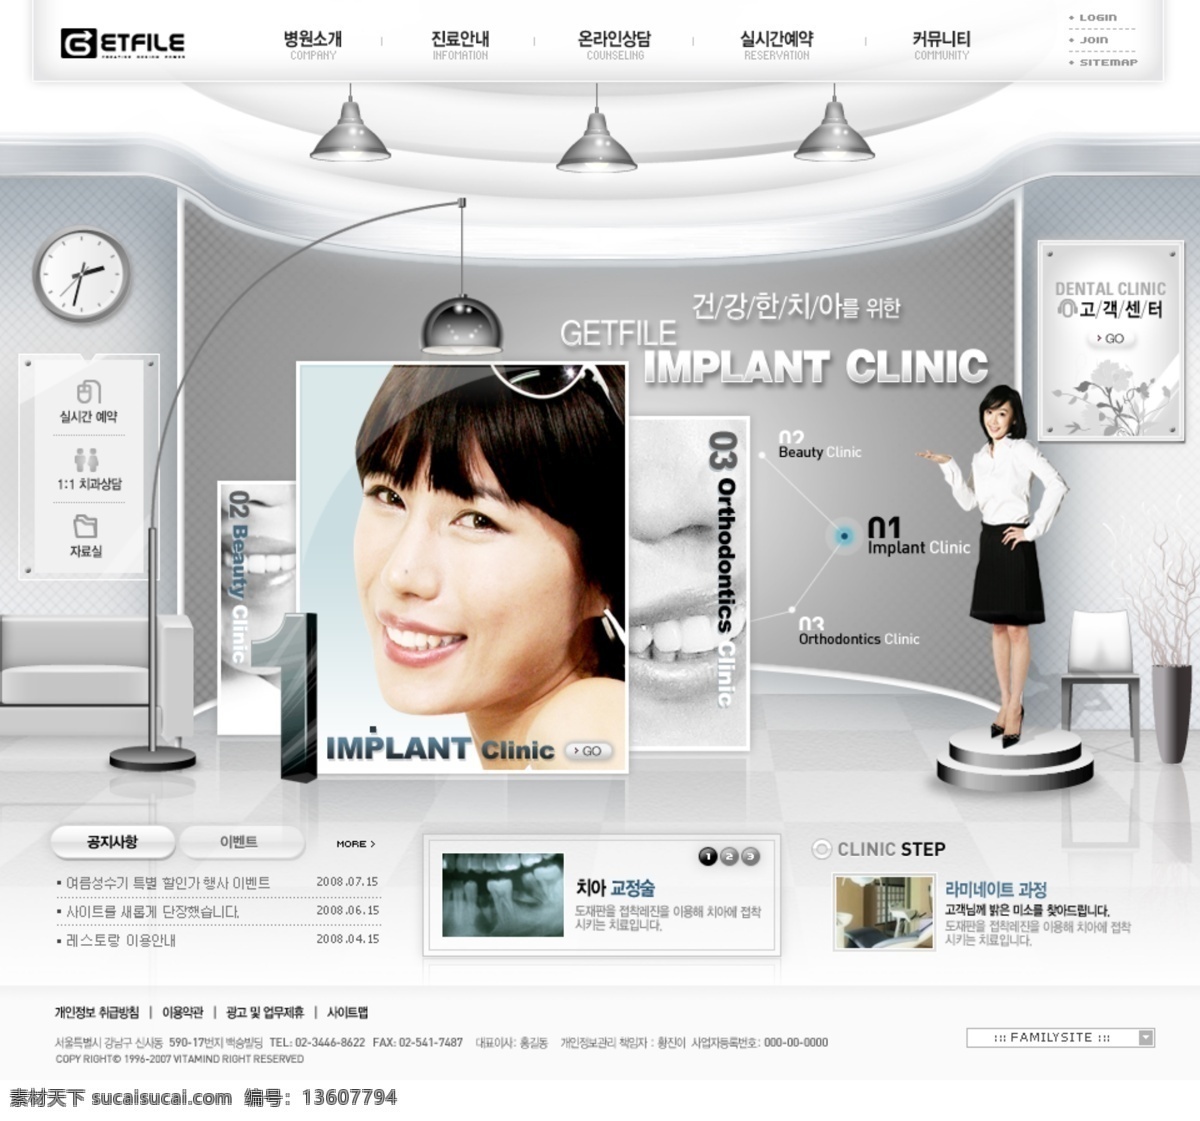 银灰色 牙齿 整形 机构 网页模板 韩国风格 笑容 银灰色色调 整形机构 网页素材